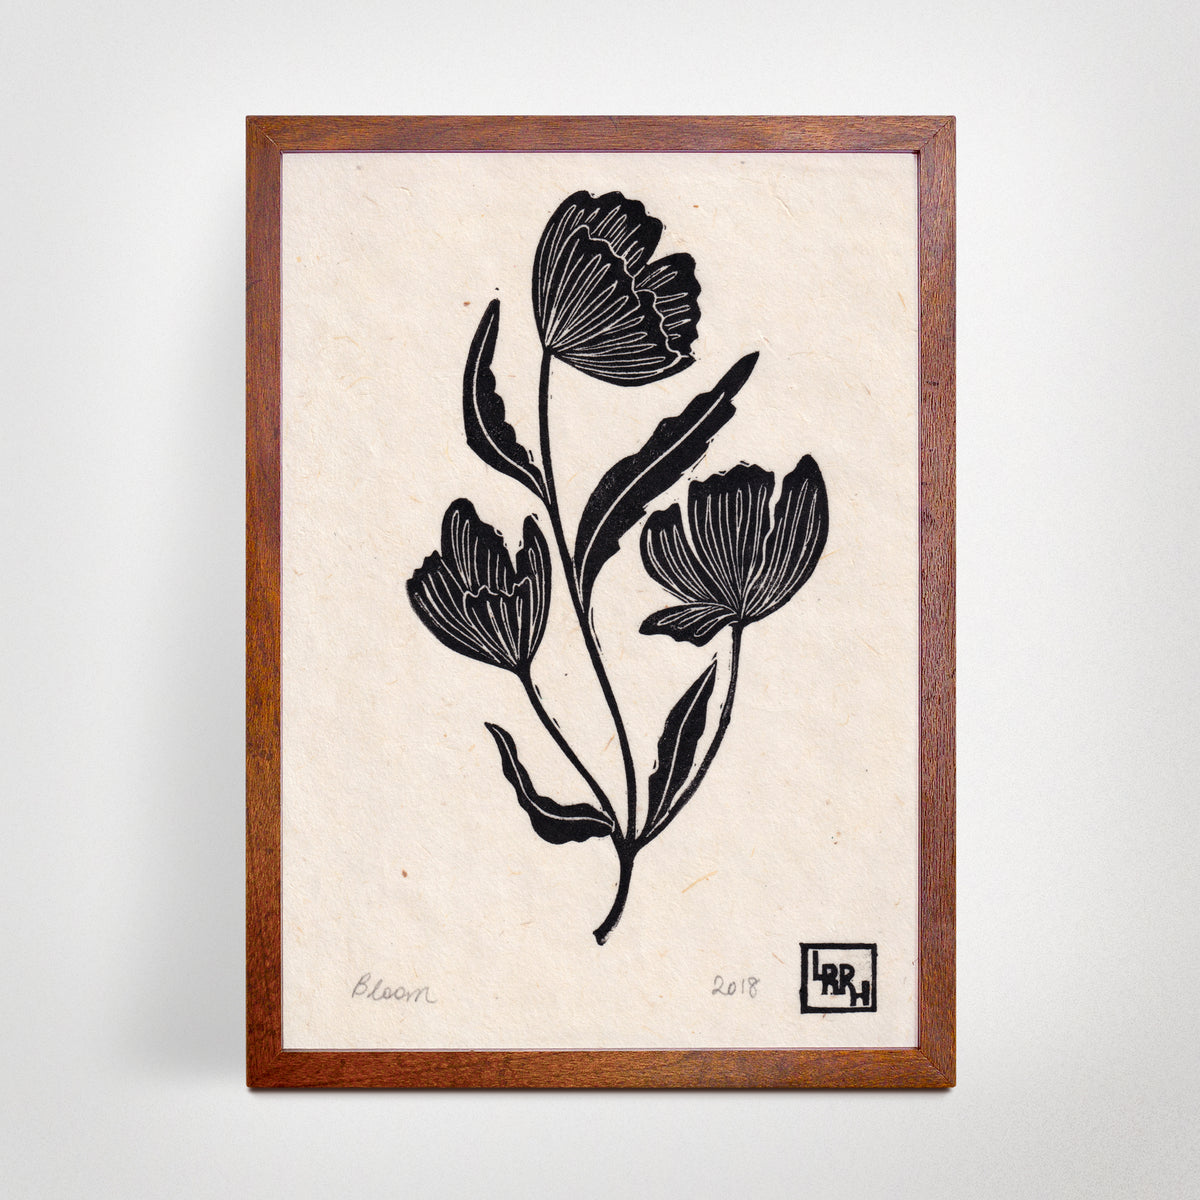 Bloom Linoprint, original artwork, handmade in Sydney